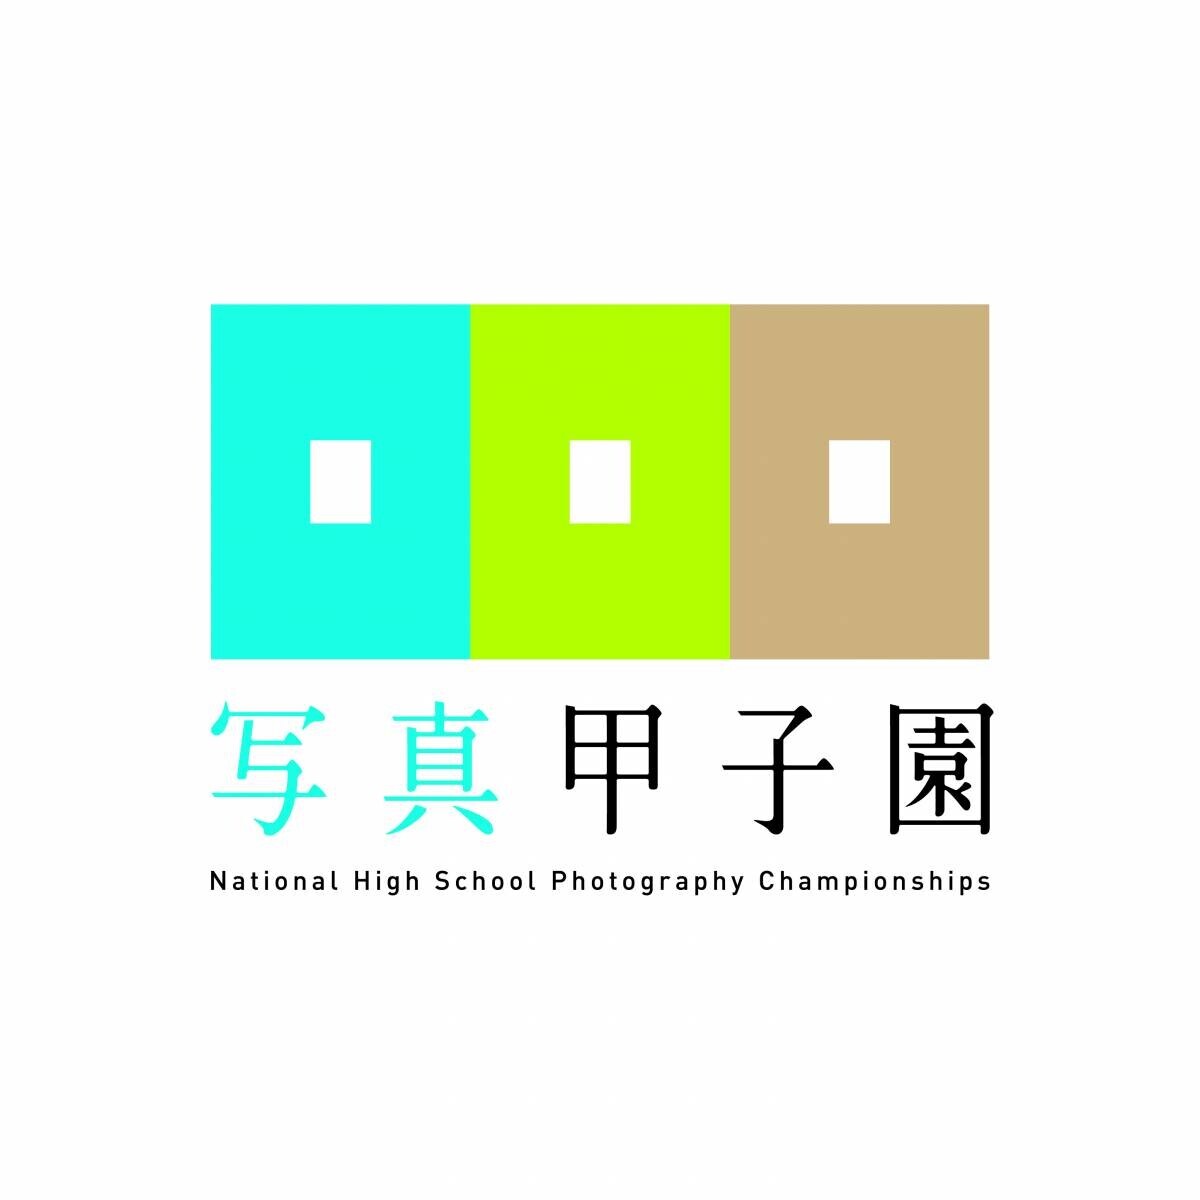 【北海道東川町】全国高等学校写真選手権大会「写真甲子園」代表審査委員決定のお知らせ